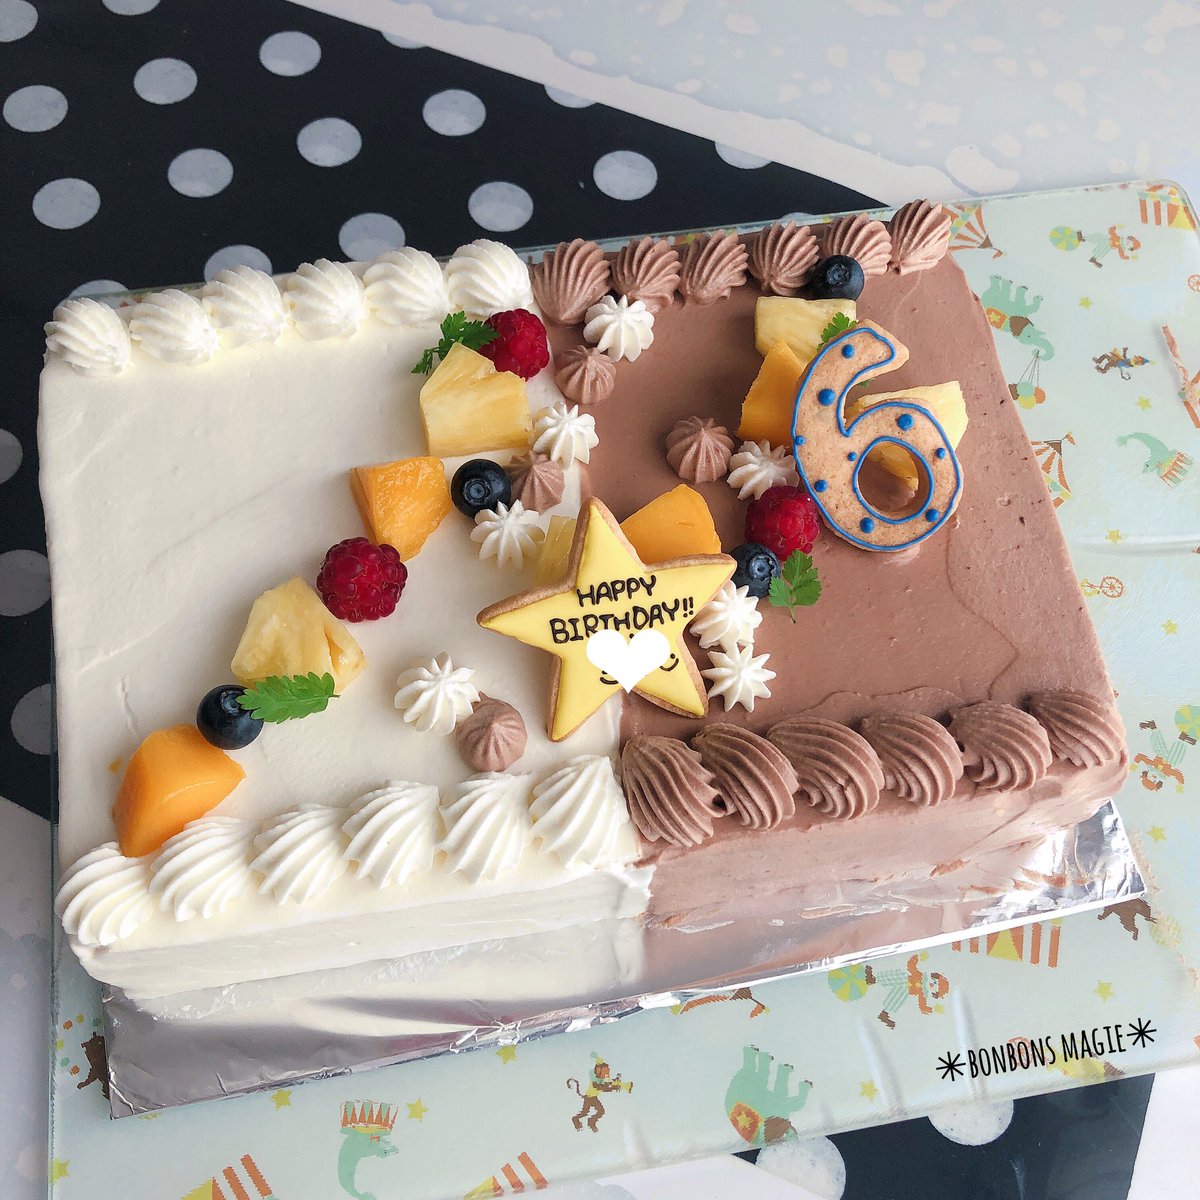 Hiｔomi No Twitter ケーキ 自分たちの結婚記念日 と たのまれもののスプラトゥーン 大きいサイズでハーフ ハーフ 四角のナッペが久々で だいぶ手こずった 手作りケーキ デコレーションケーキ 誕生日ケーキ スプラトゥーン キャラケーキ 結婚記念日